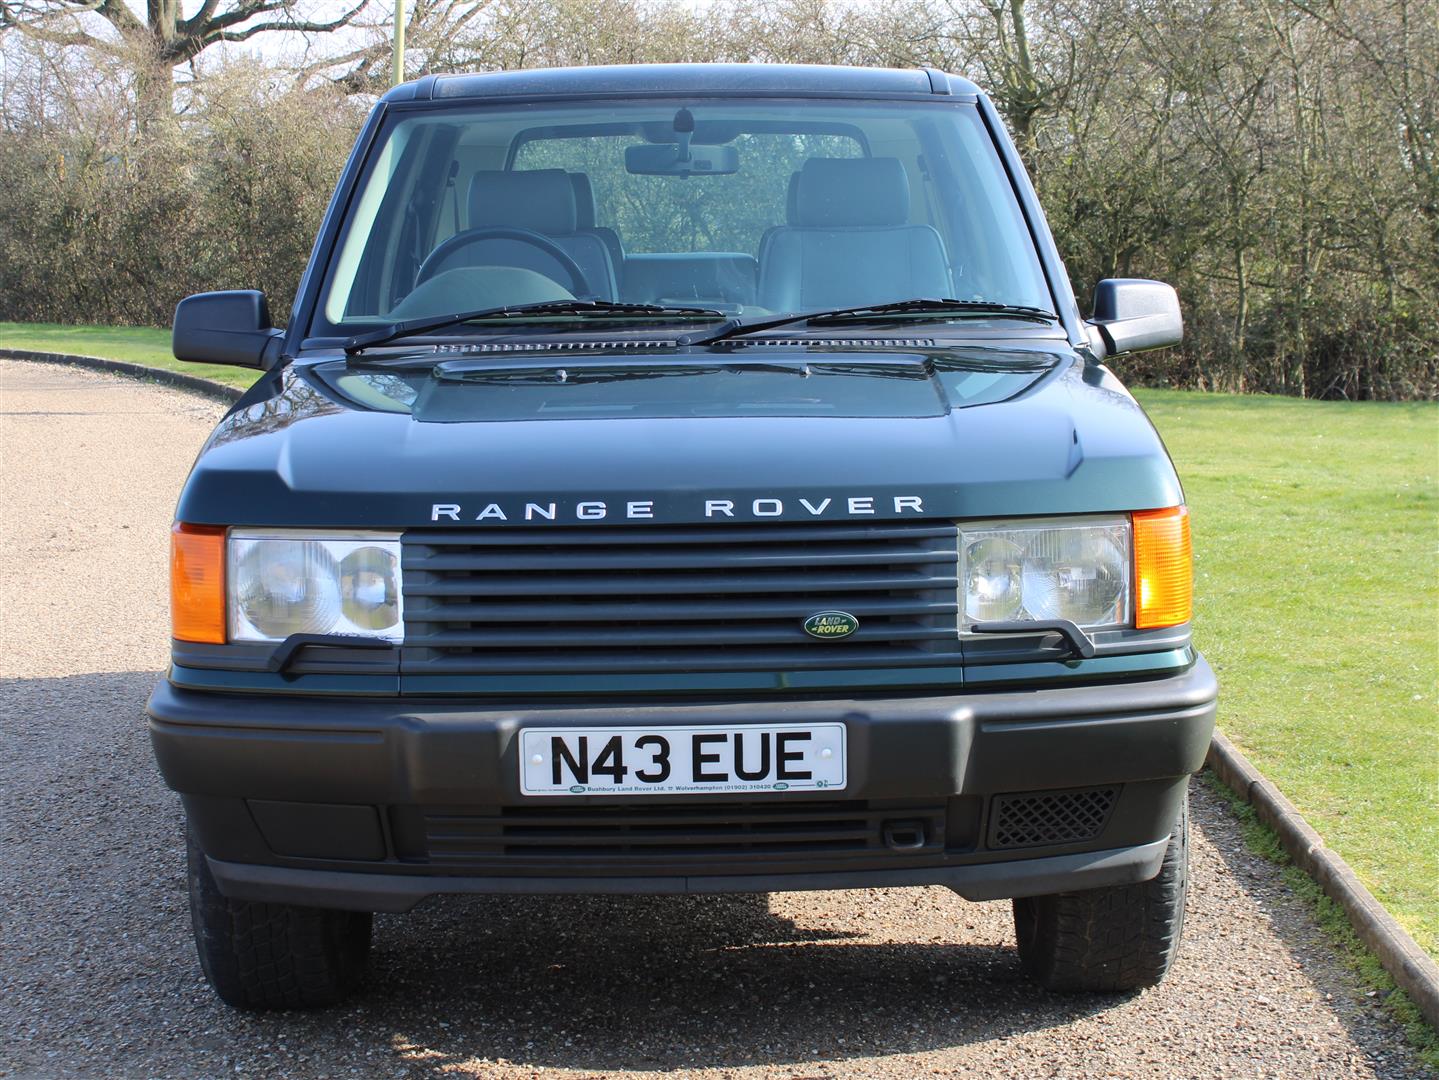 1996 Range Rover 2.5 DSE Auto - Image 8 of 20